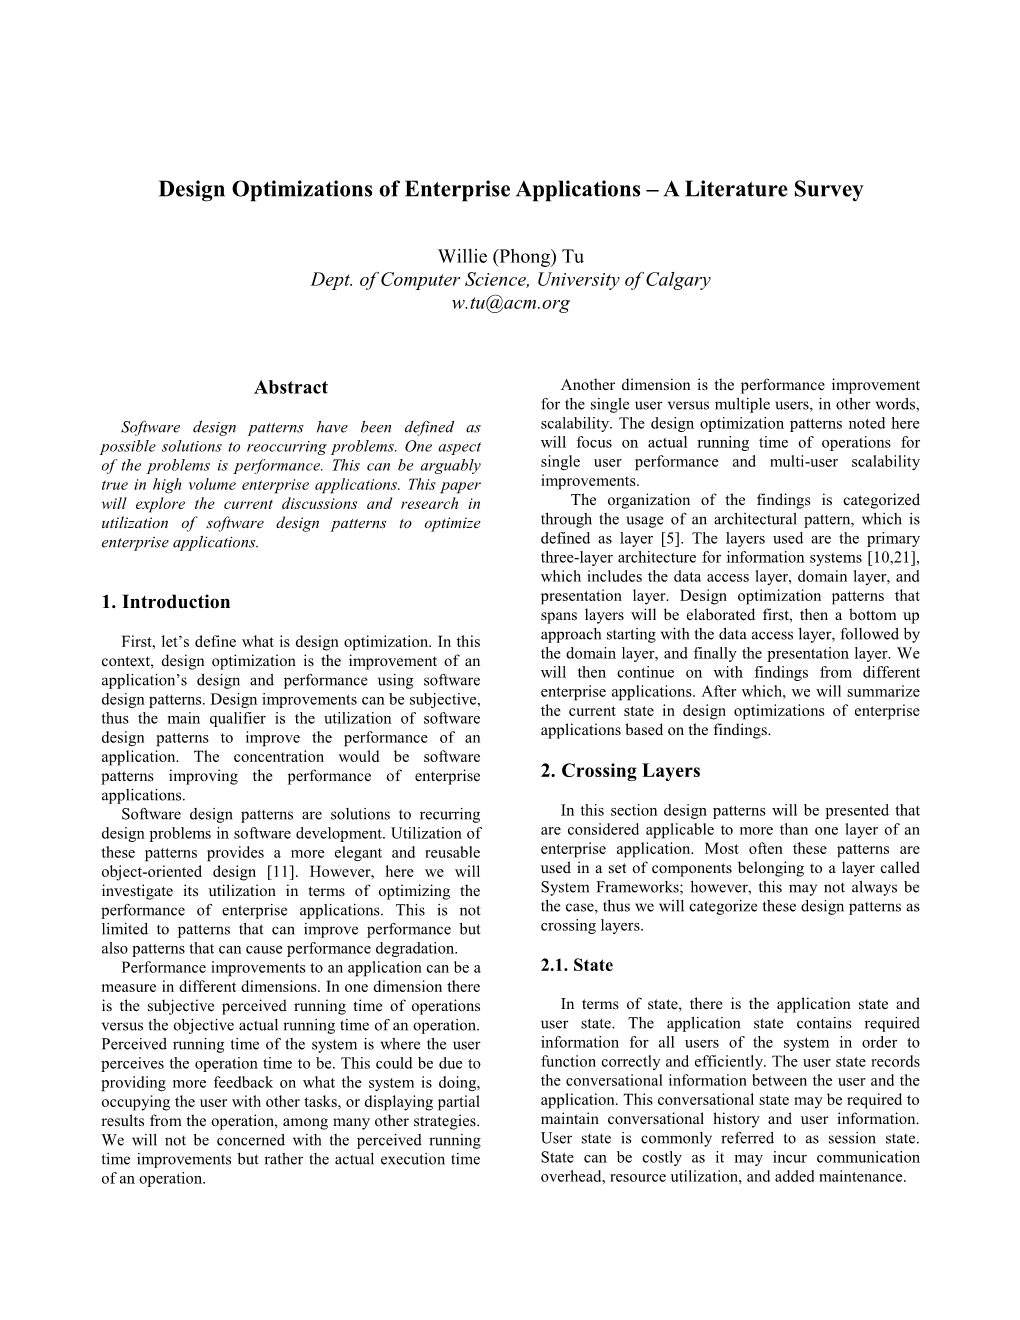 Design Optimizations of Enterprise Applications – a Literature Survey